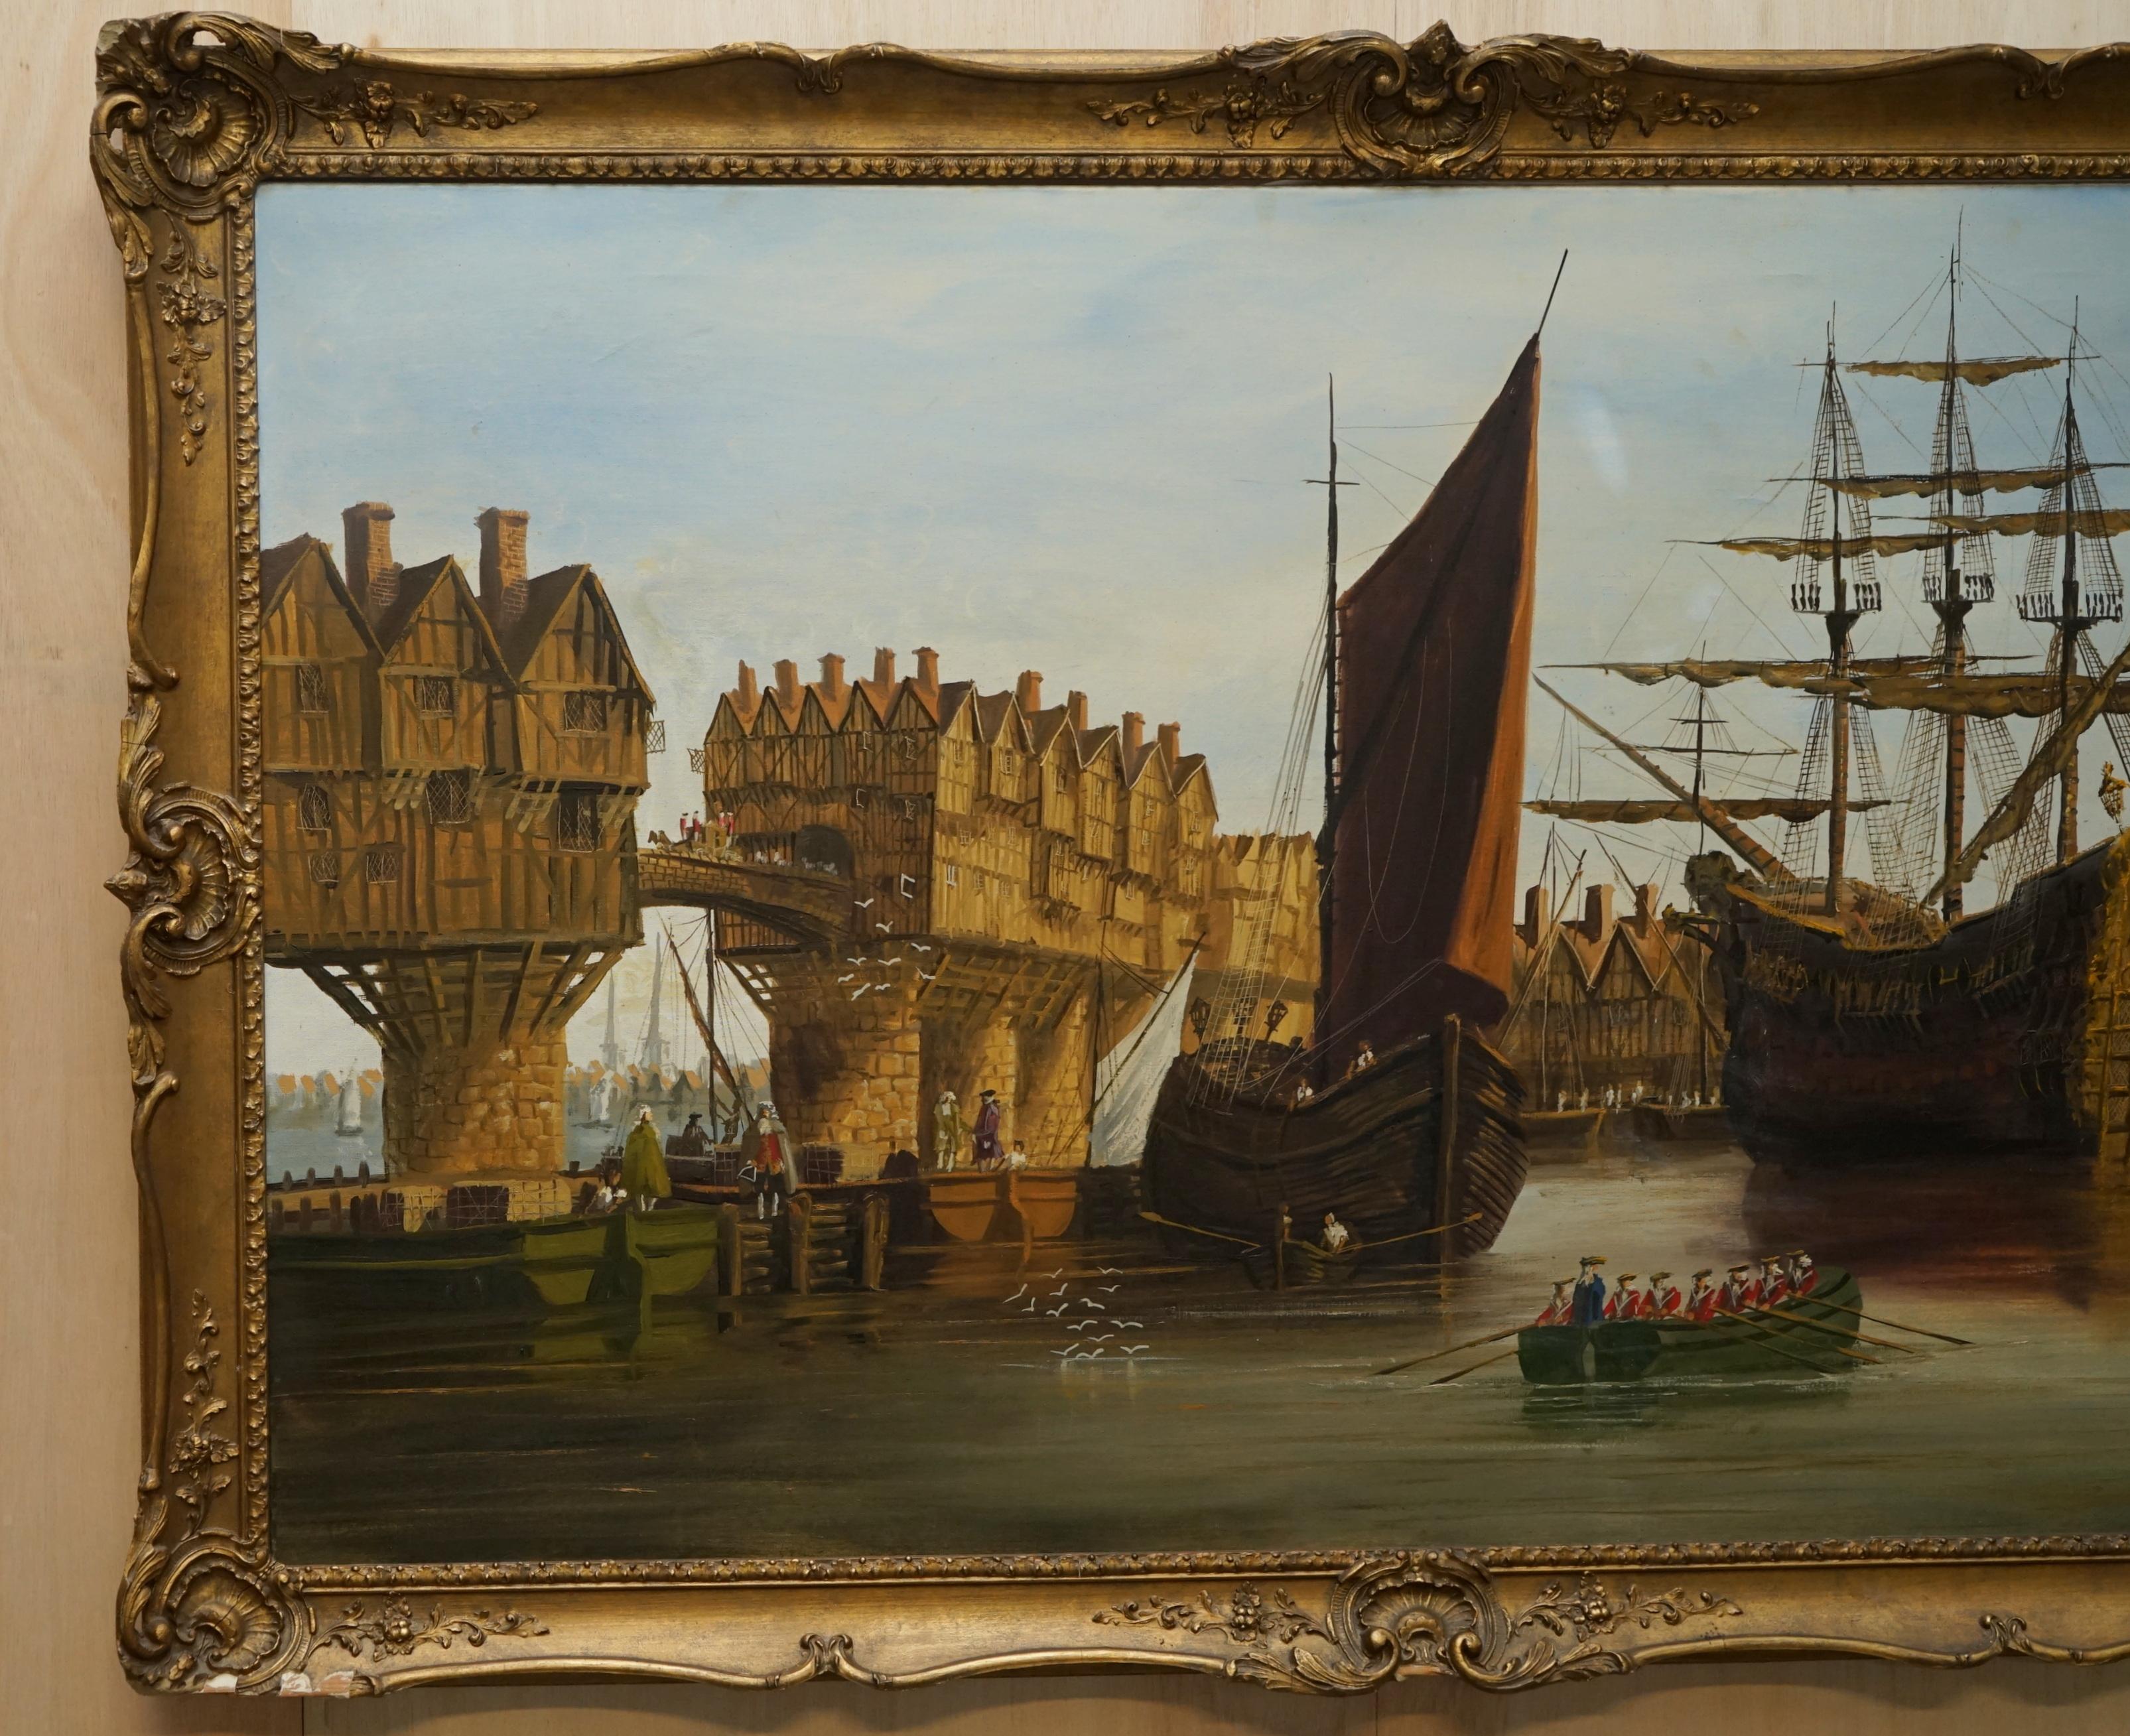 Wir freuen uns, dieses sehr große und dekorative Öl auf Leinwand, das einige frühviktorianische Schiffe auf der Themse zeigt, zum Verkauf anbieten zu können.

Dies ist ein wunderbares Gemälde, das in jeder Umgebung wirklich sehr exquisit aussieht.